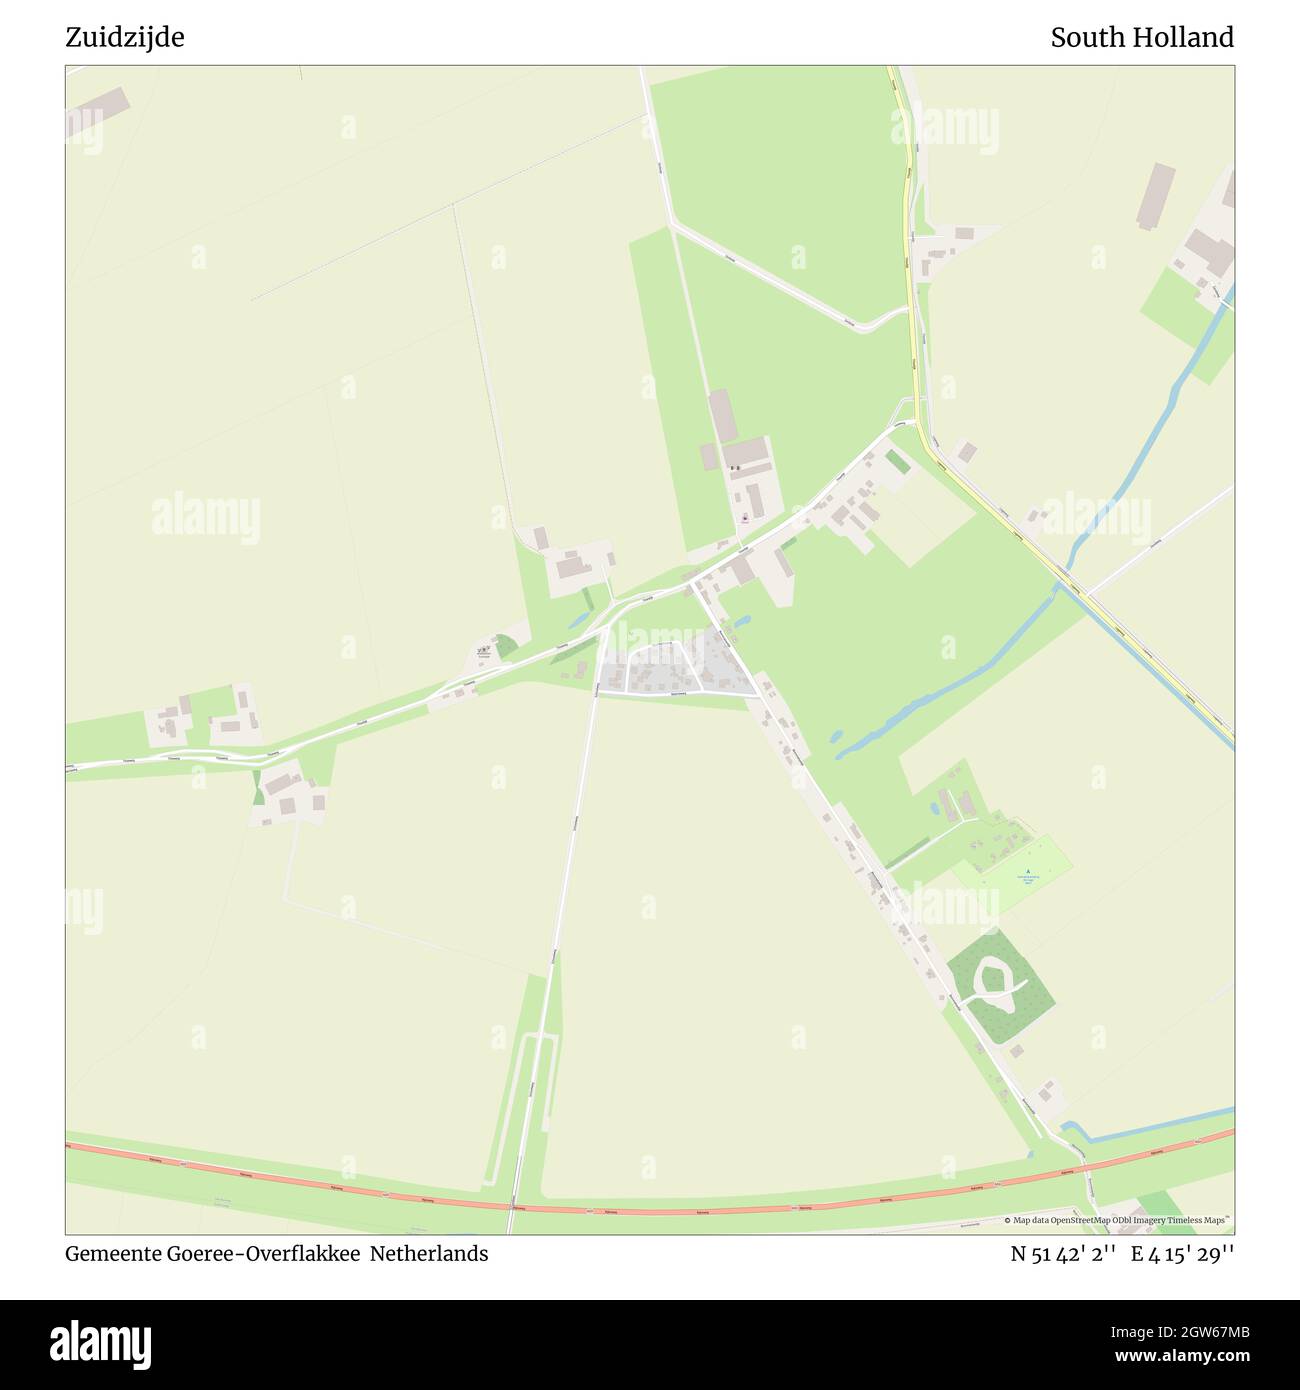 Zuidzijde, Gemeente Goeree-Overflakkee, Paesi Bassi, Olanda del Sud, N 51 42' 2'', e 4 15' 29''', mappa, mappa senza tempo pubblicata nel 2021. Viaggiatori, esploratori e avventurieri come Florence Nightingale, David Livingstone, Ernest Shackleton, Lewis and Clark e Sherlock Holmes si sono affidati alle mappe per pianificare i viaggi verso gli angoli più remoti del mondo, Timeless Maps sta mappando la maggior parte delle località del mondo, mostrando il successo di grandi sogni Foto Stock